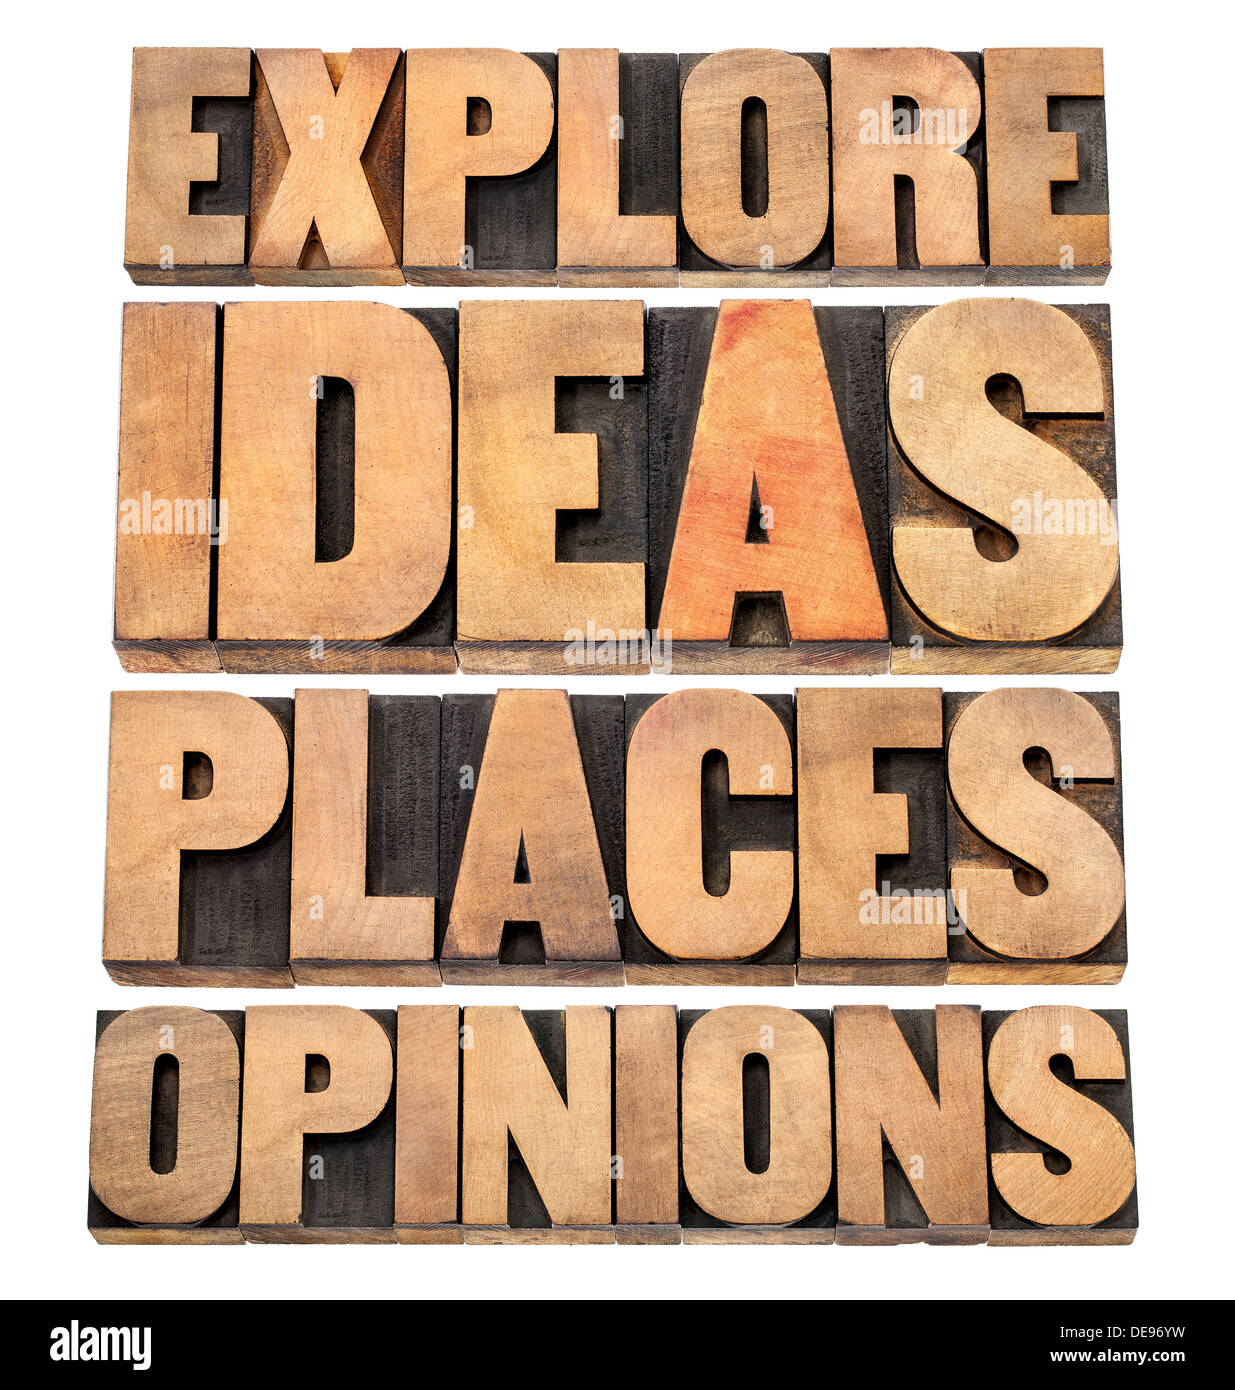 Explorar ideas, lugares, opiniones - asesoramiento motivacional - un collage de texto aislado en tipografía tipo bloques de madera Foto de stock